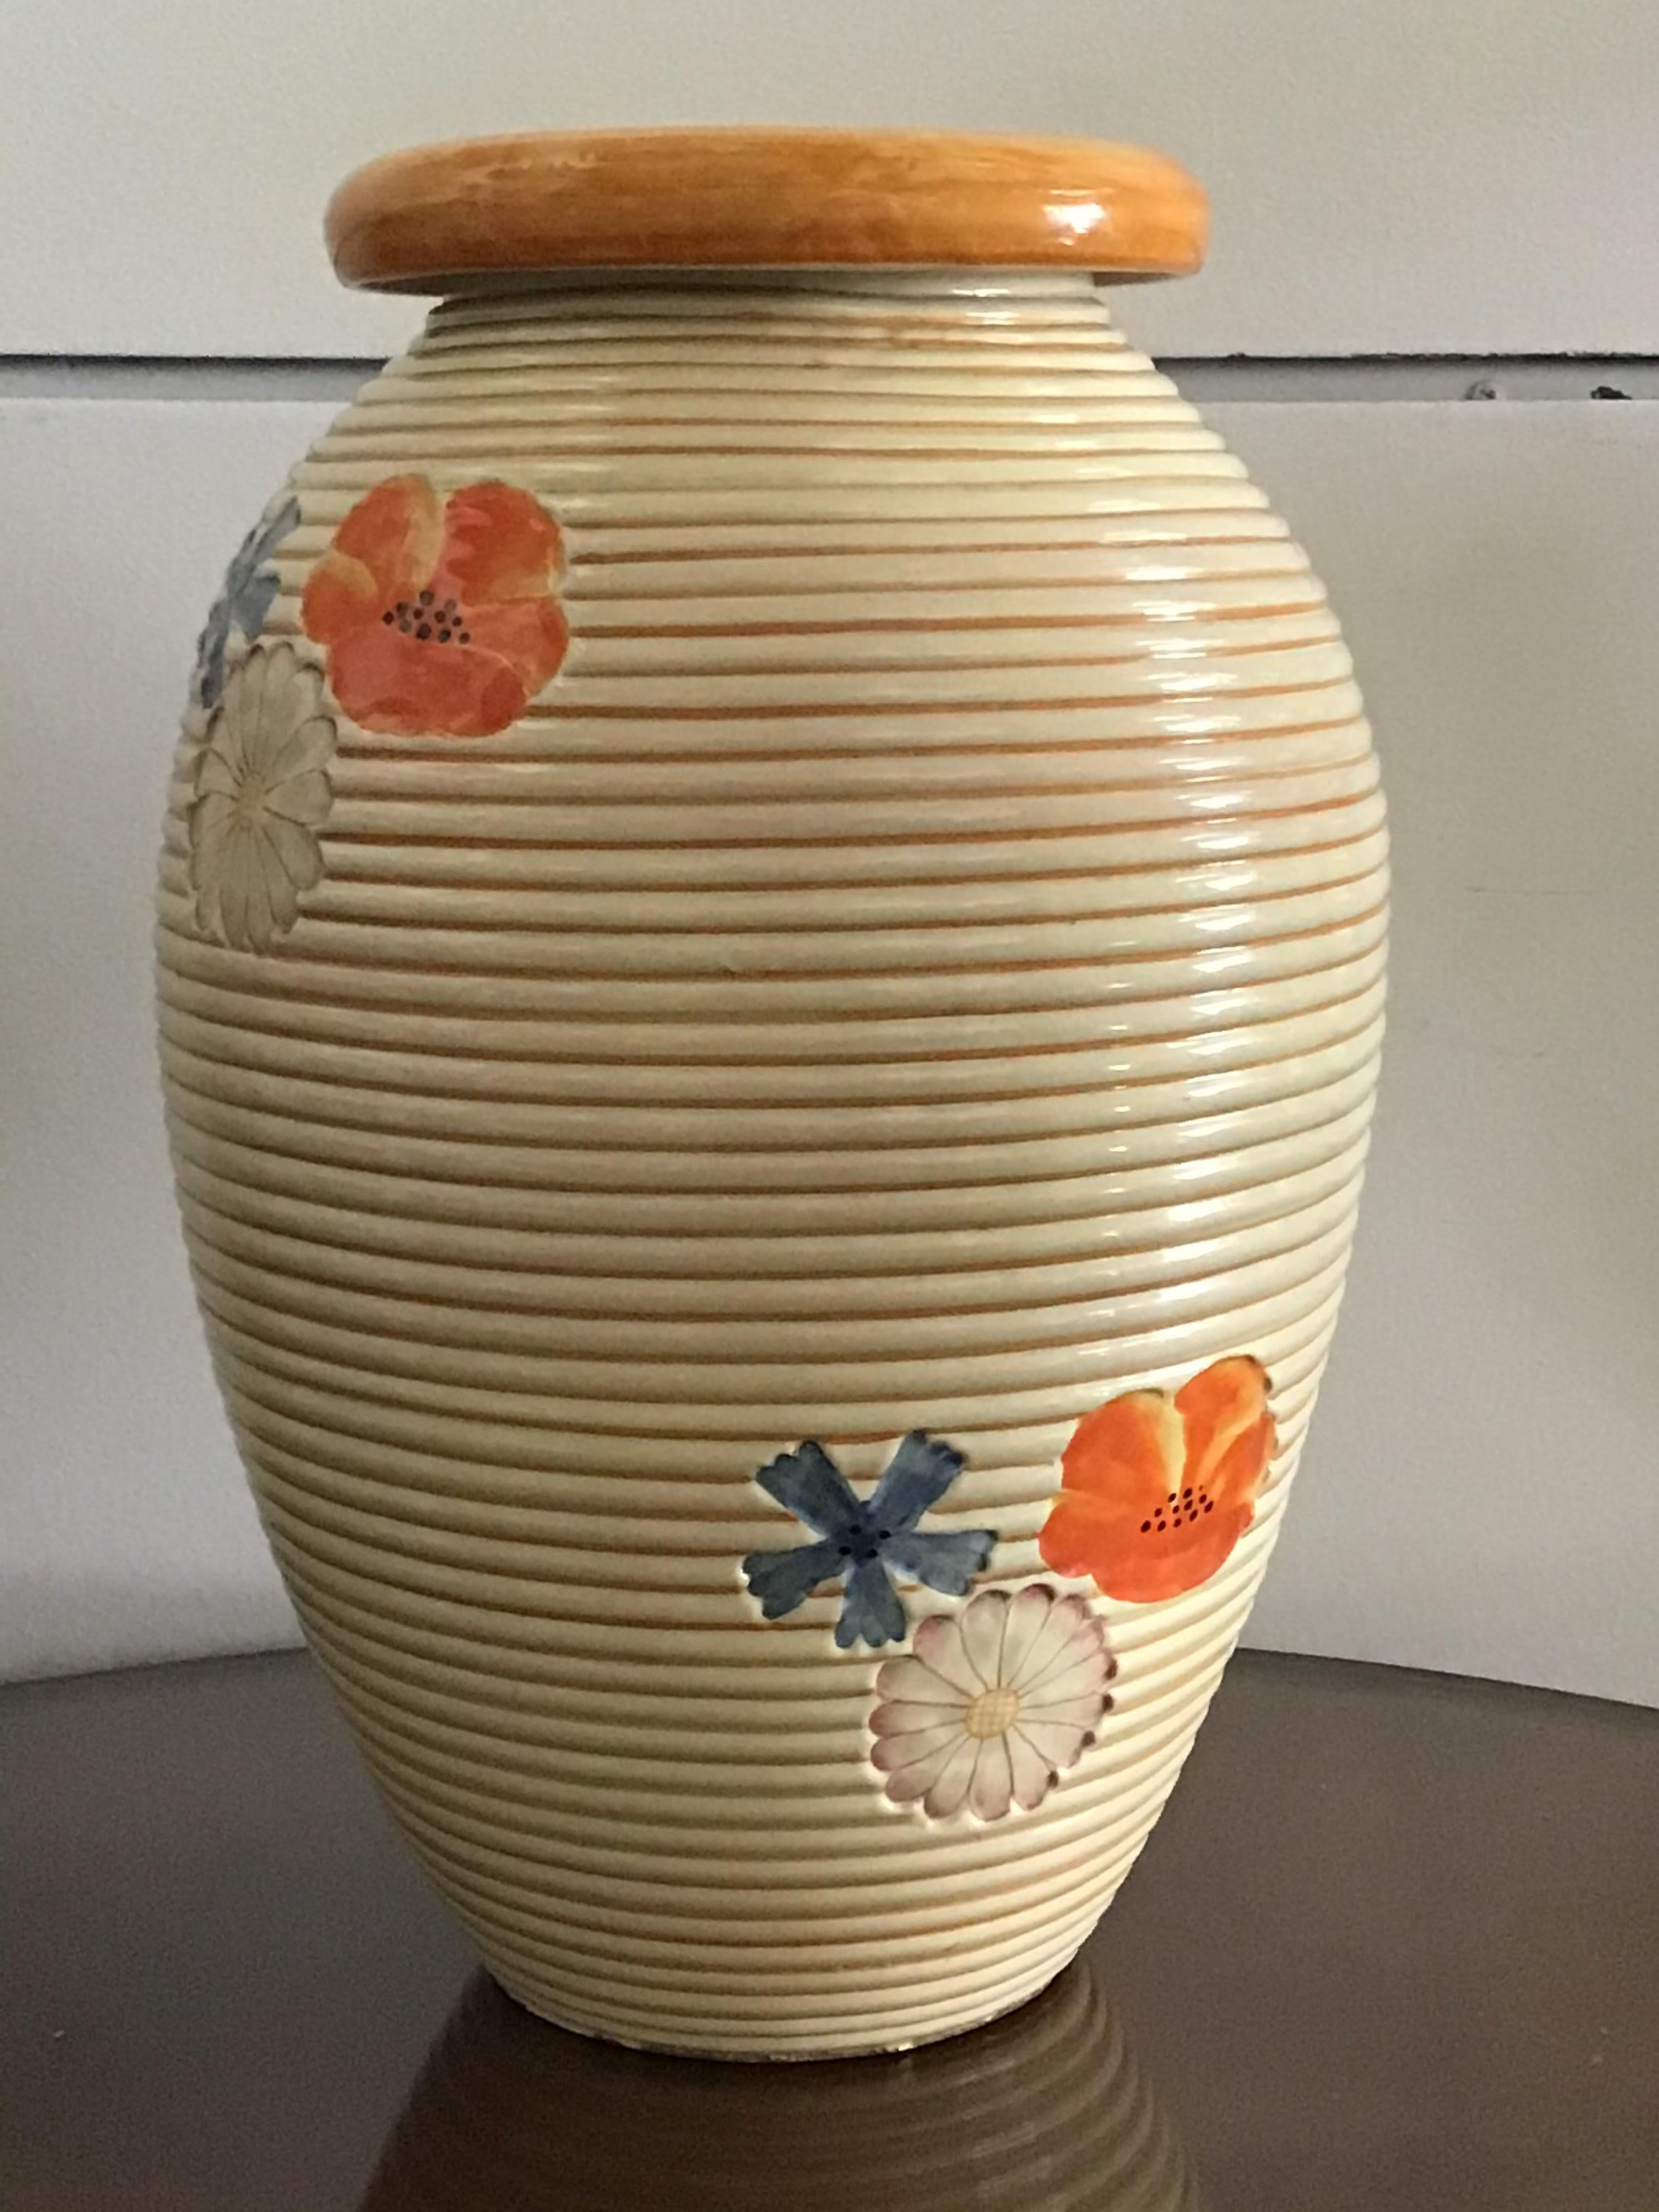 Pucci Umbertide Vase /Umbrella Stand Ceramic, 1950, Italy For Sale 2